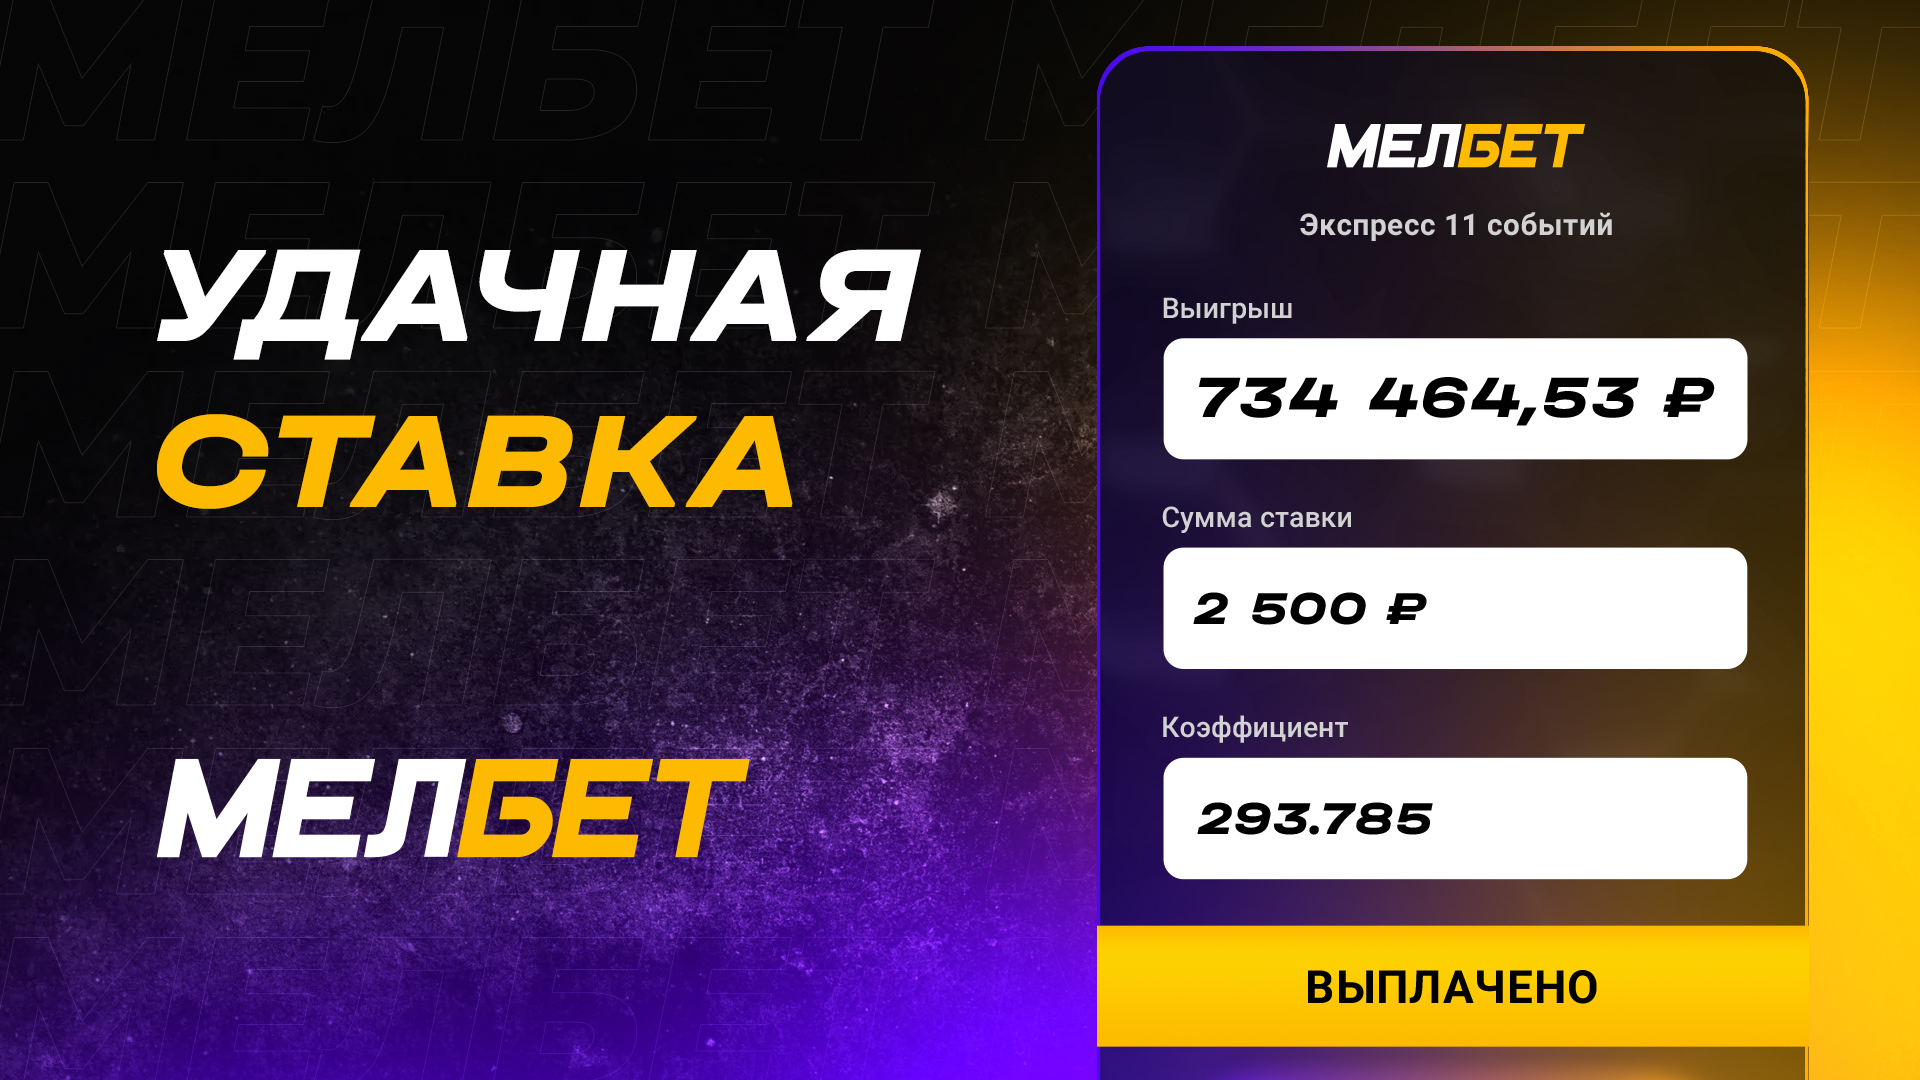 Игрок БК "Мелбет" собрал удивительный экспресс и забрал более 700 000 рублей!